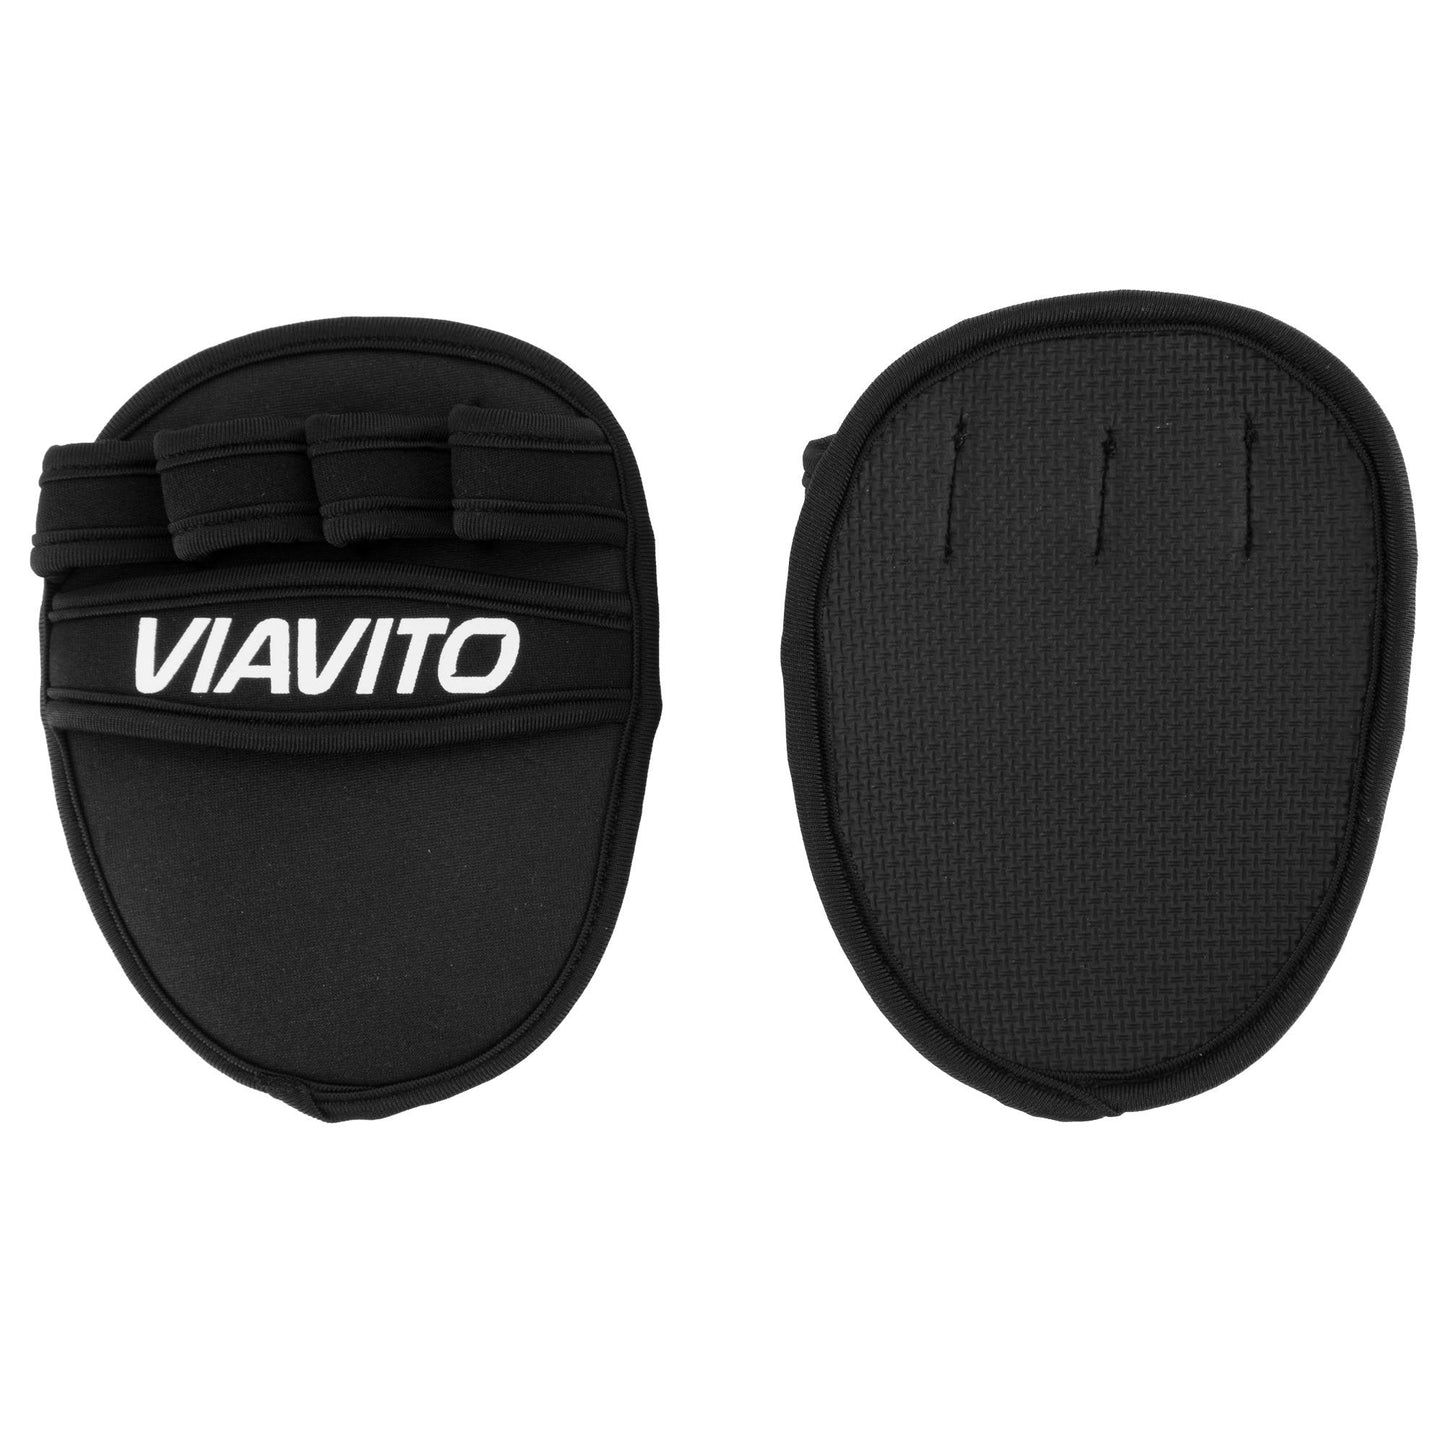 |Viavito Weight Lifting Grip Pad 2|